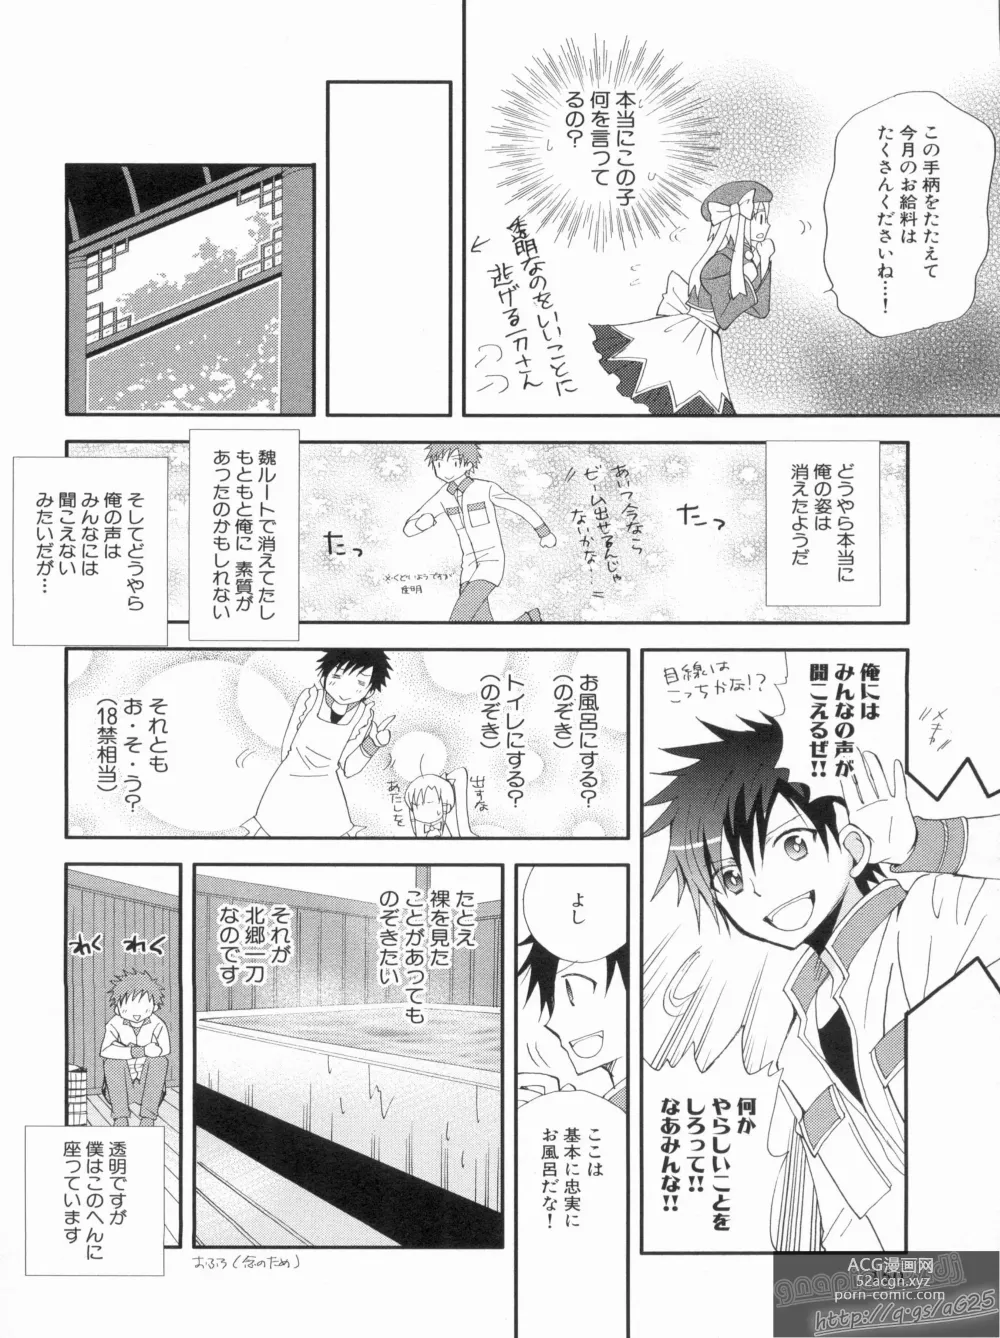 Page 154 of manga Shin Koihime Musou Gaishi Saiten VOL.2